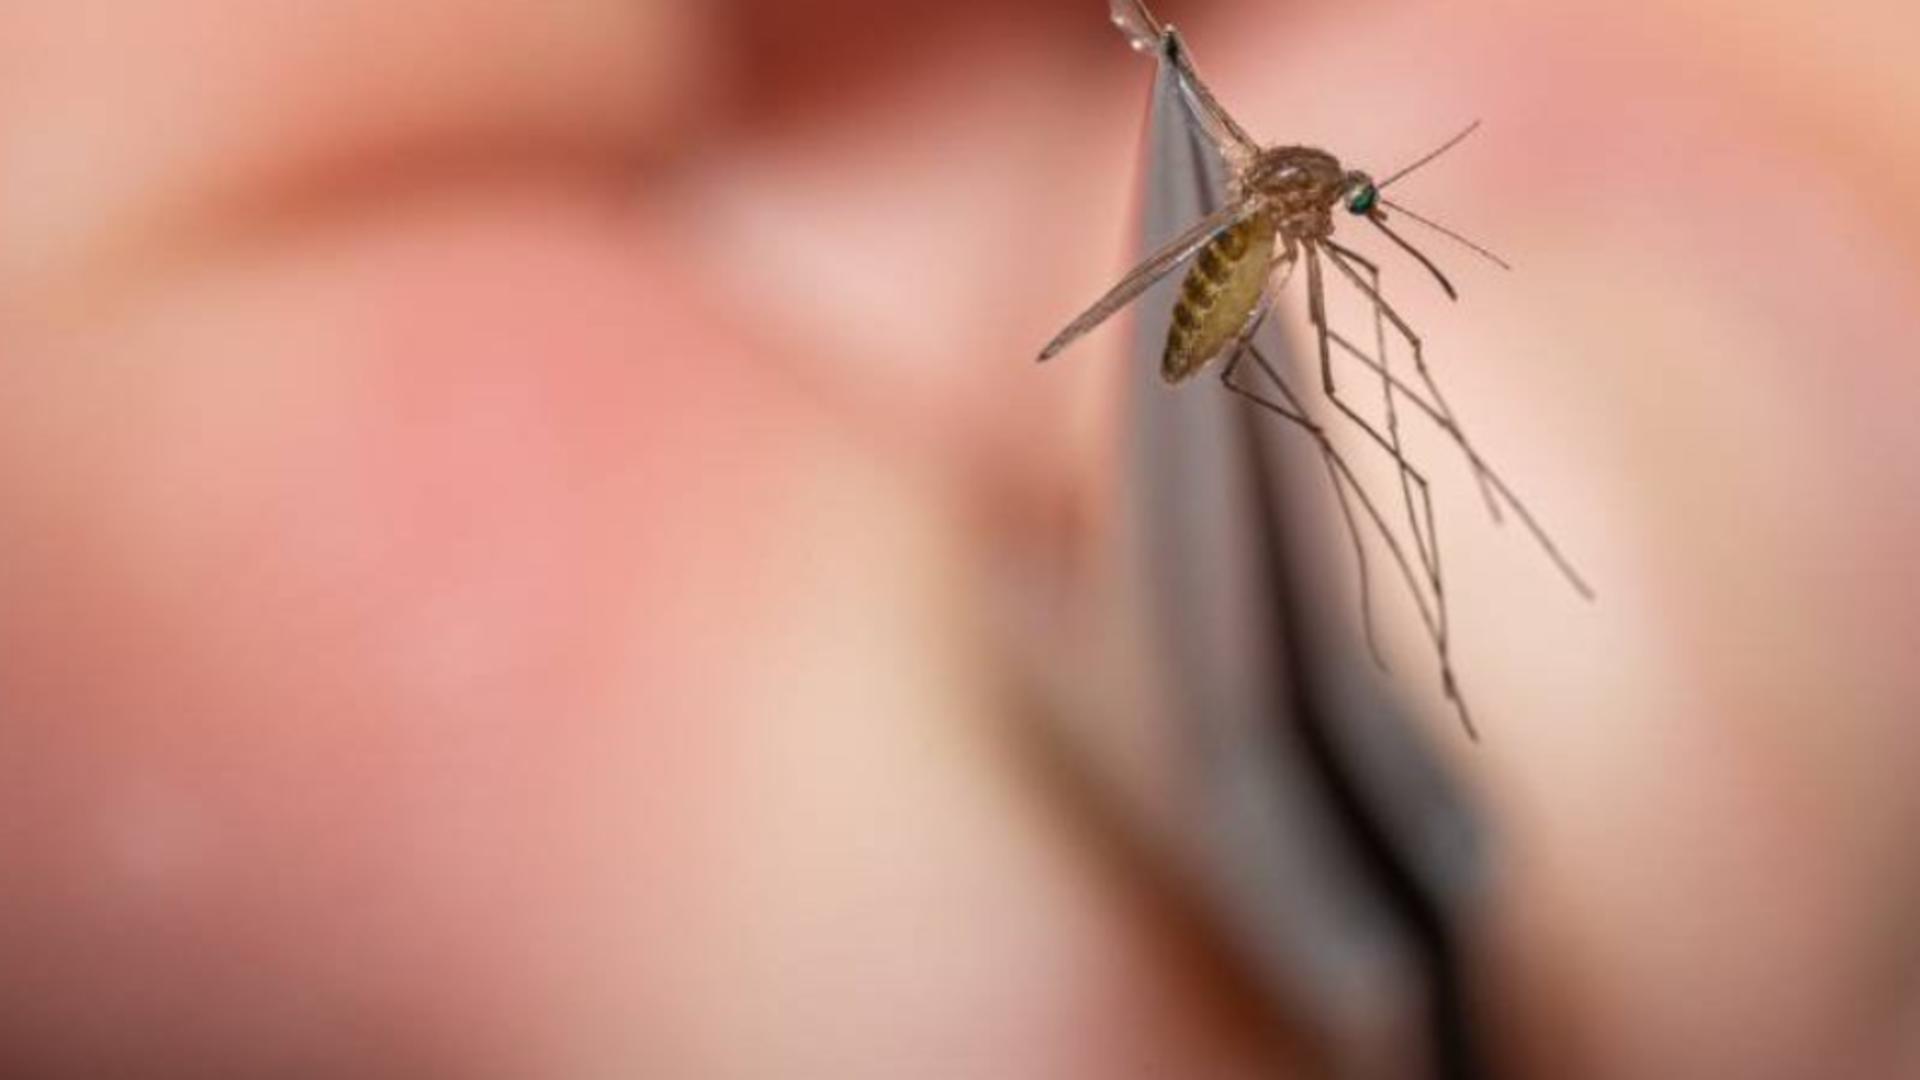 Remedii naturale împotriva țânțarilor - Ai la îndemână varianta homemade pentru a-i ține la distanță